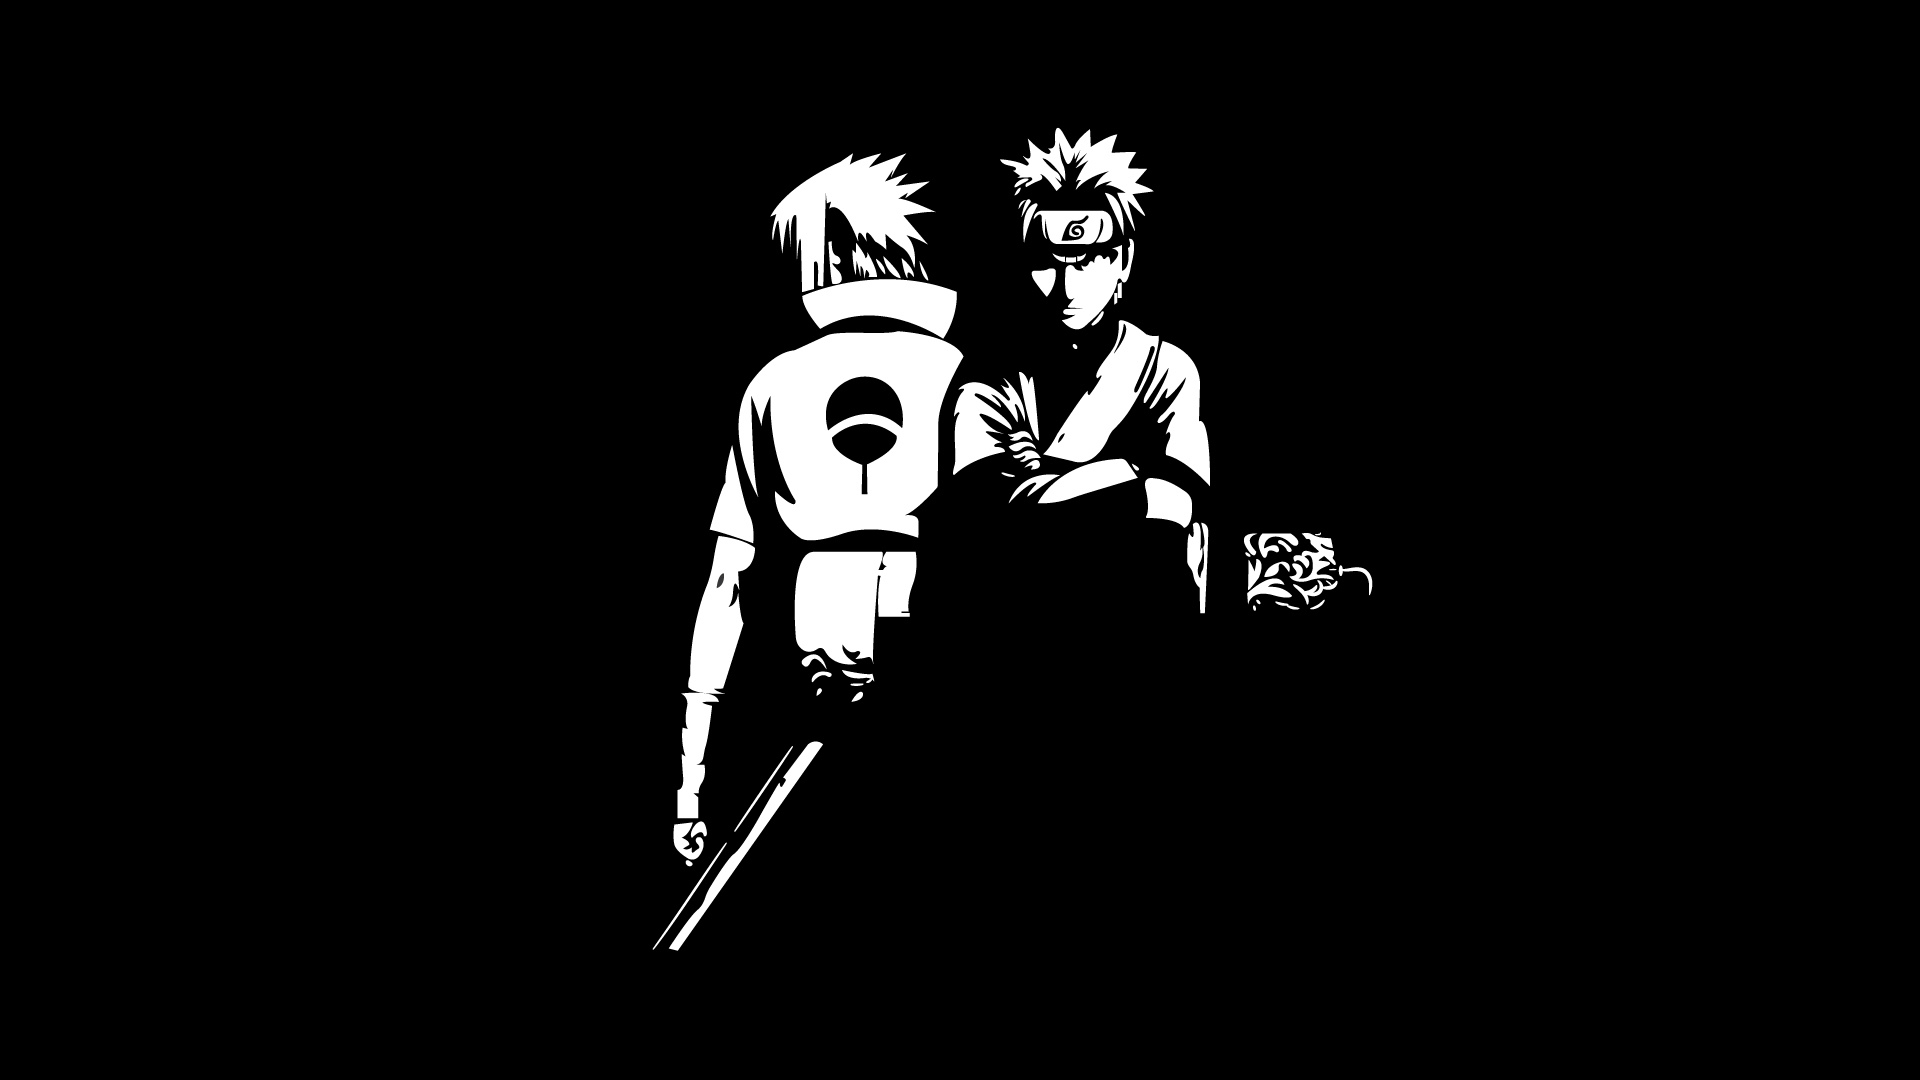 Black And White Wallpaper Of Naruto Uzumaki Sasuke Uchiha 2K Naruto - Download Free Mobile